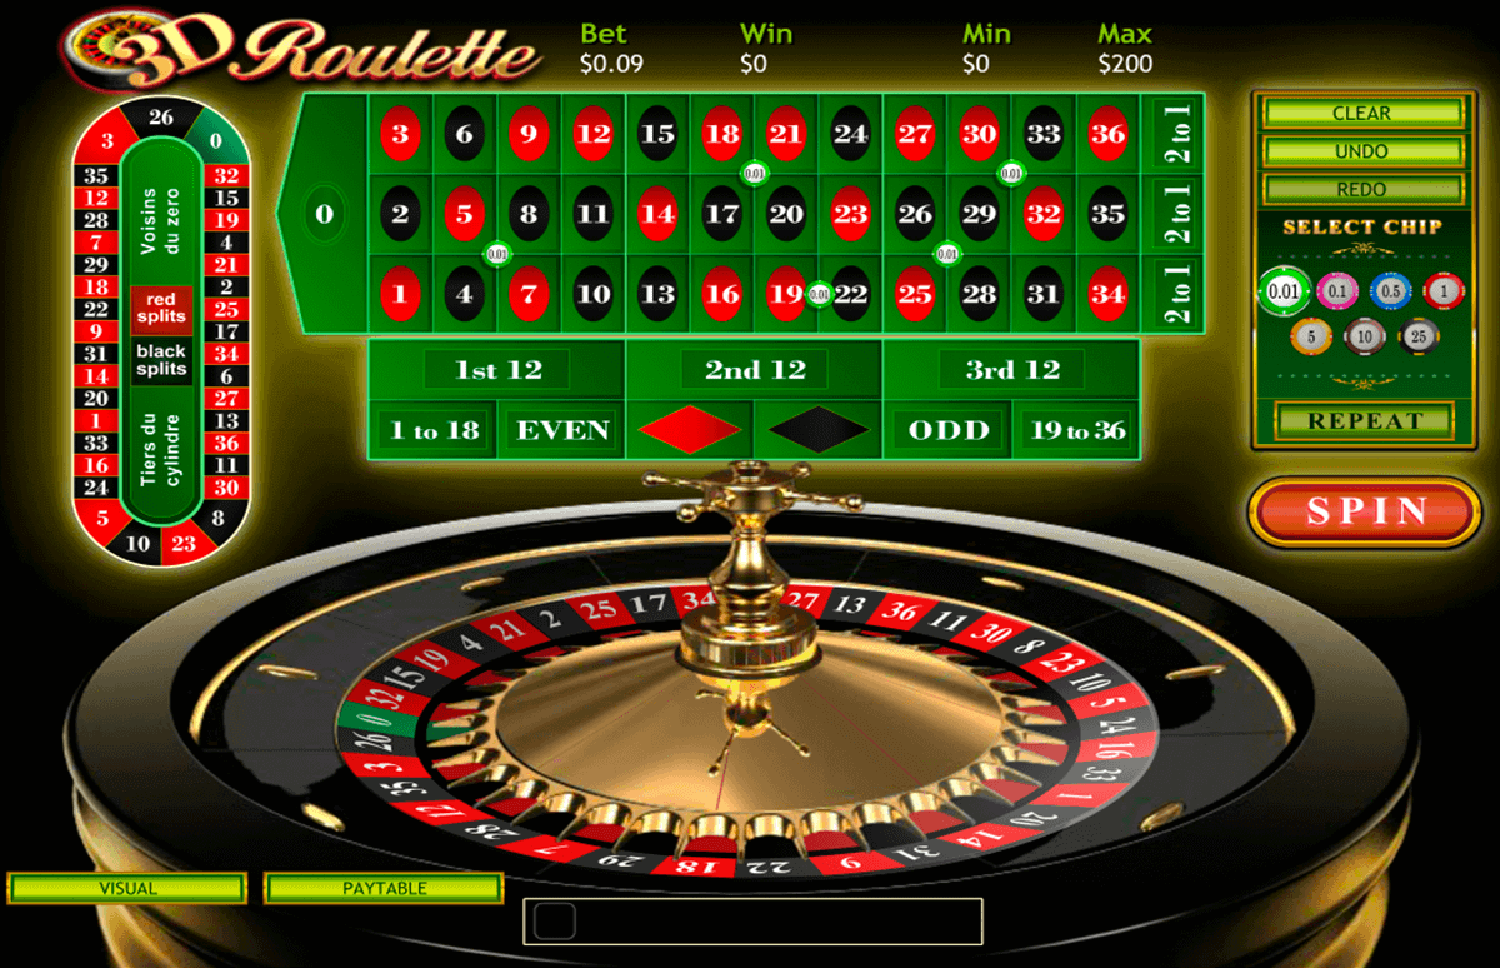 Gambling In Online Casino Free Reachcasino Gambling Strategies Gambling Tips And Rules